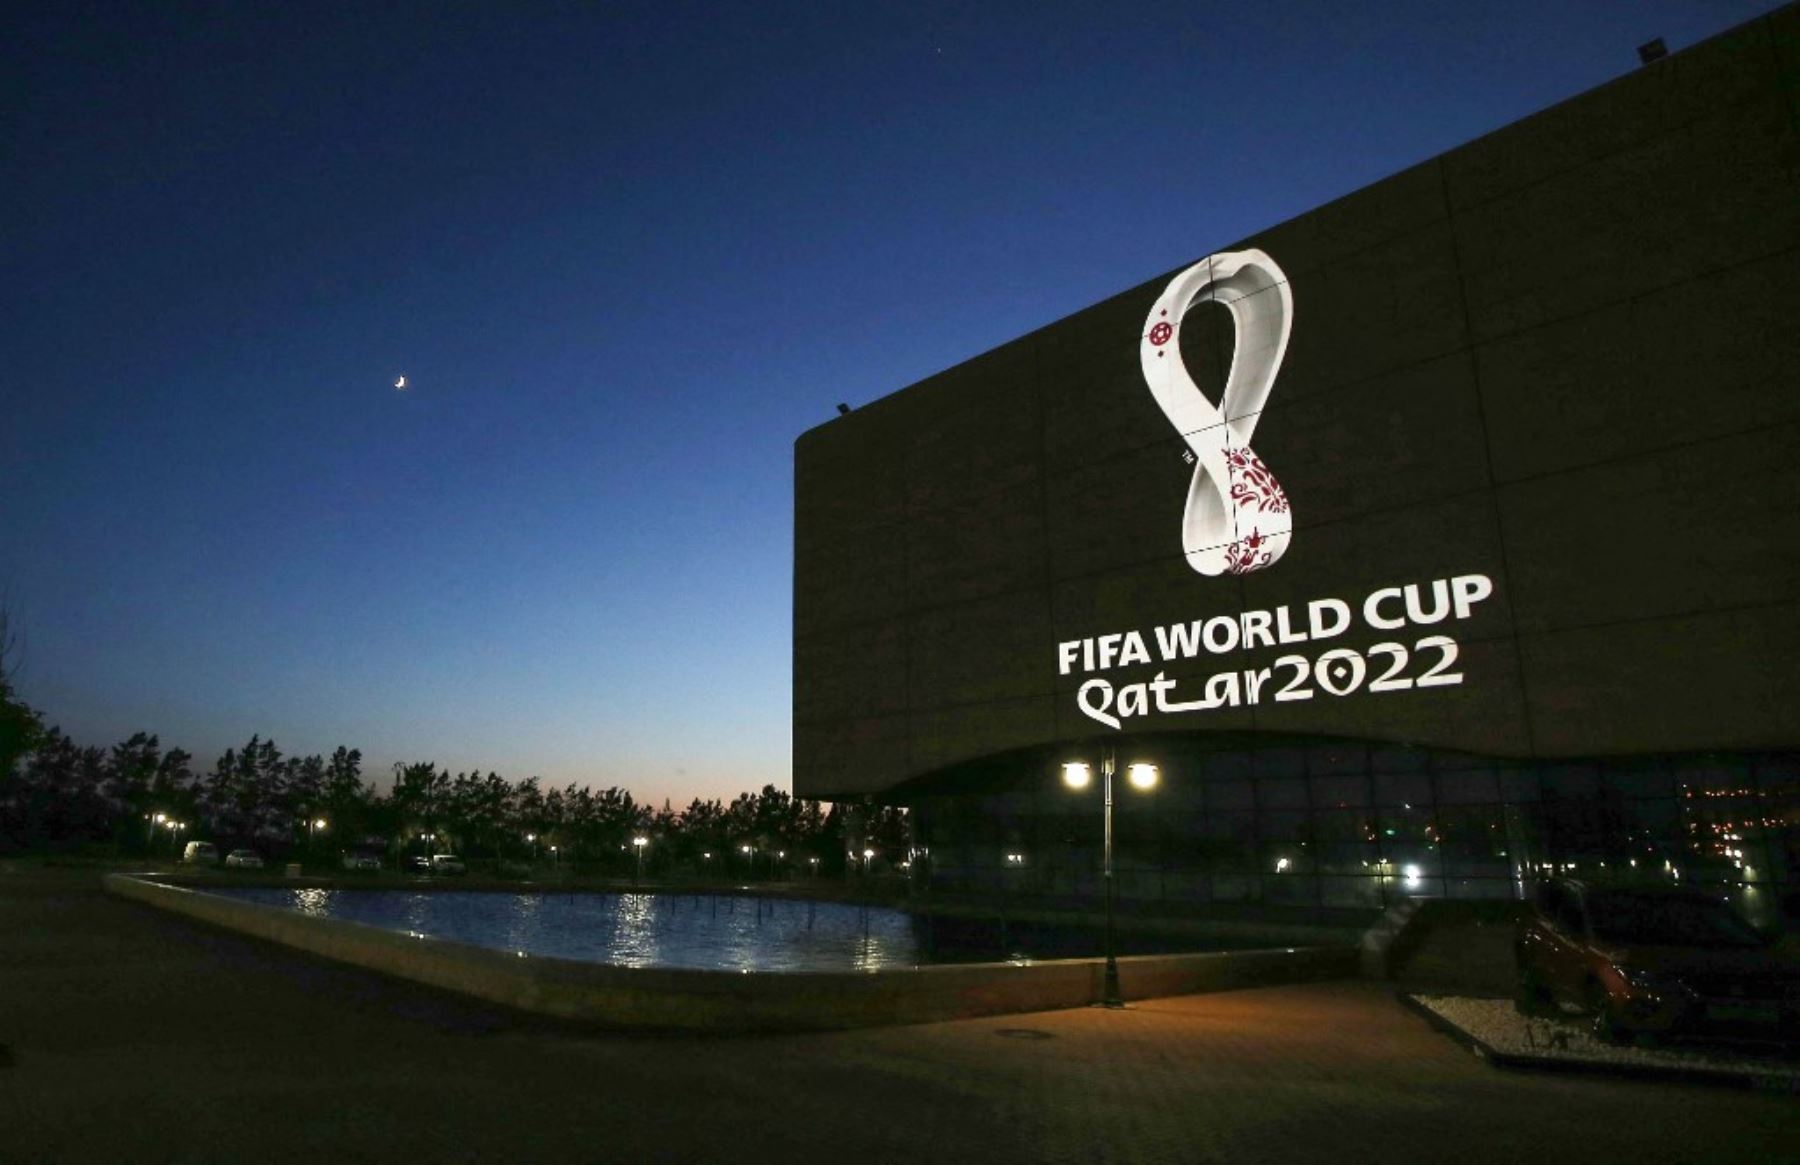 El Mundial Catar 2022 genera expectativas